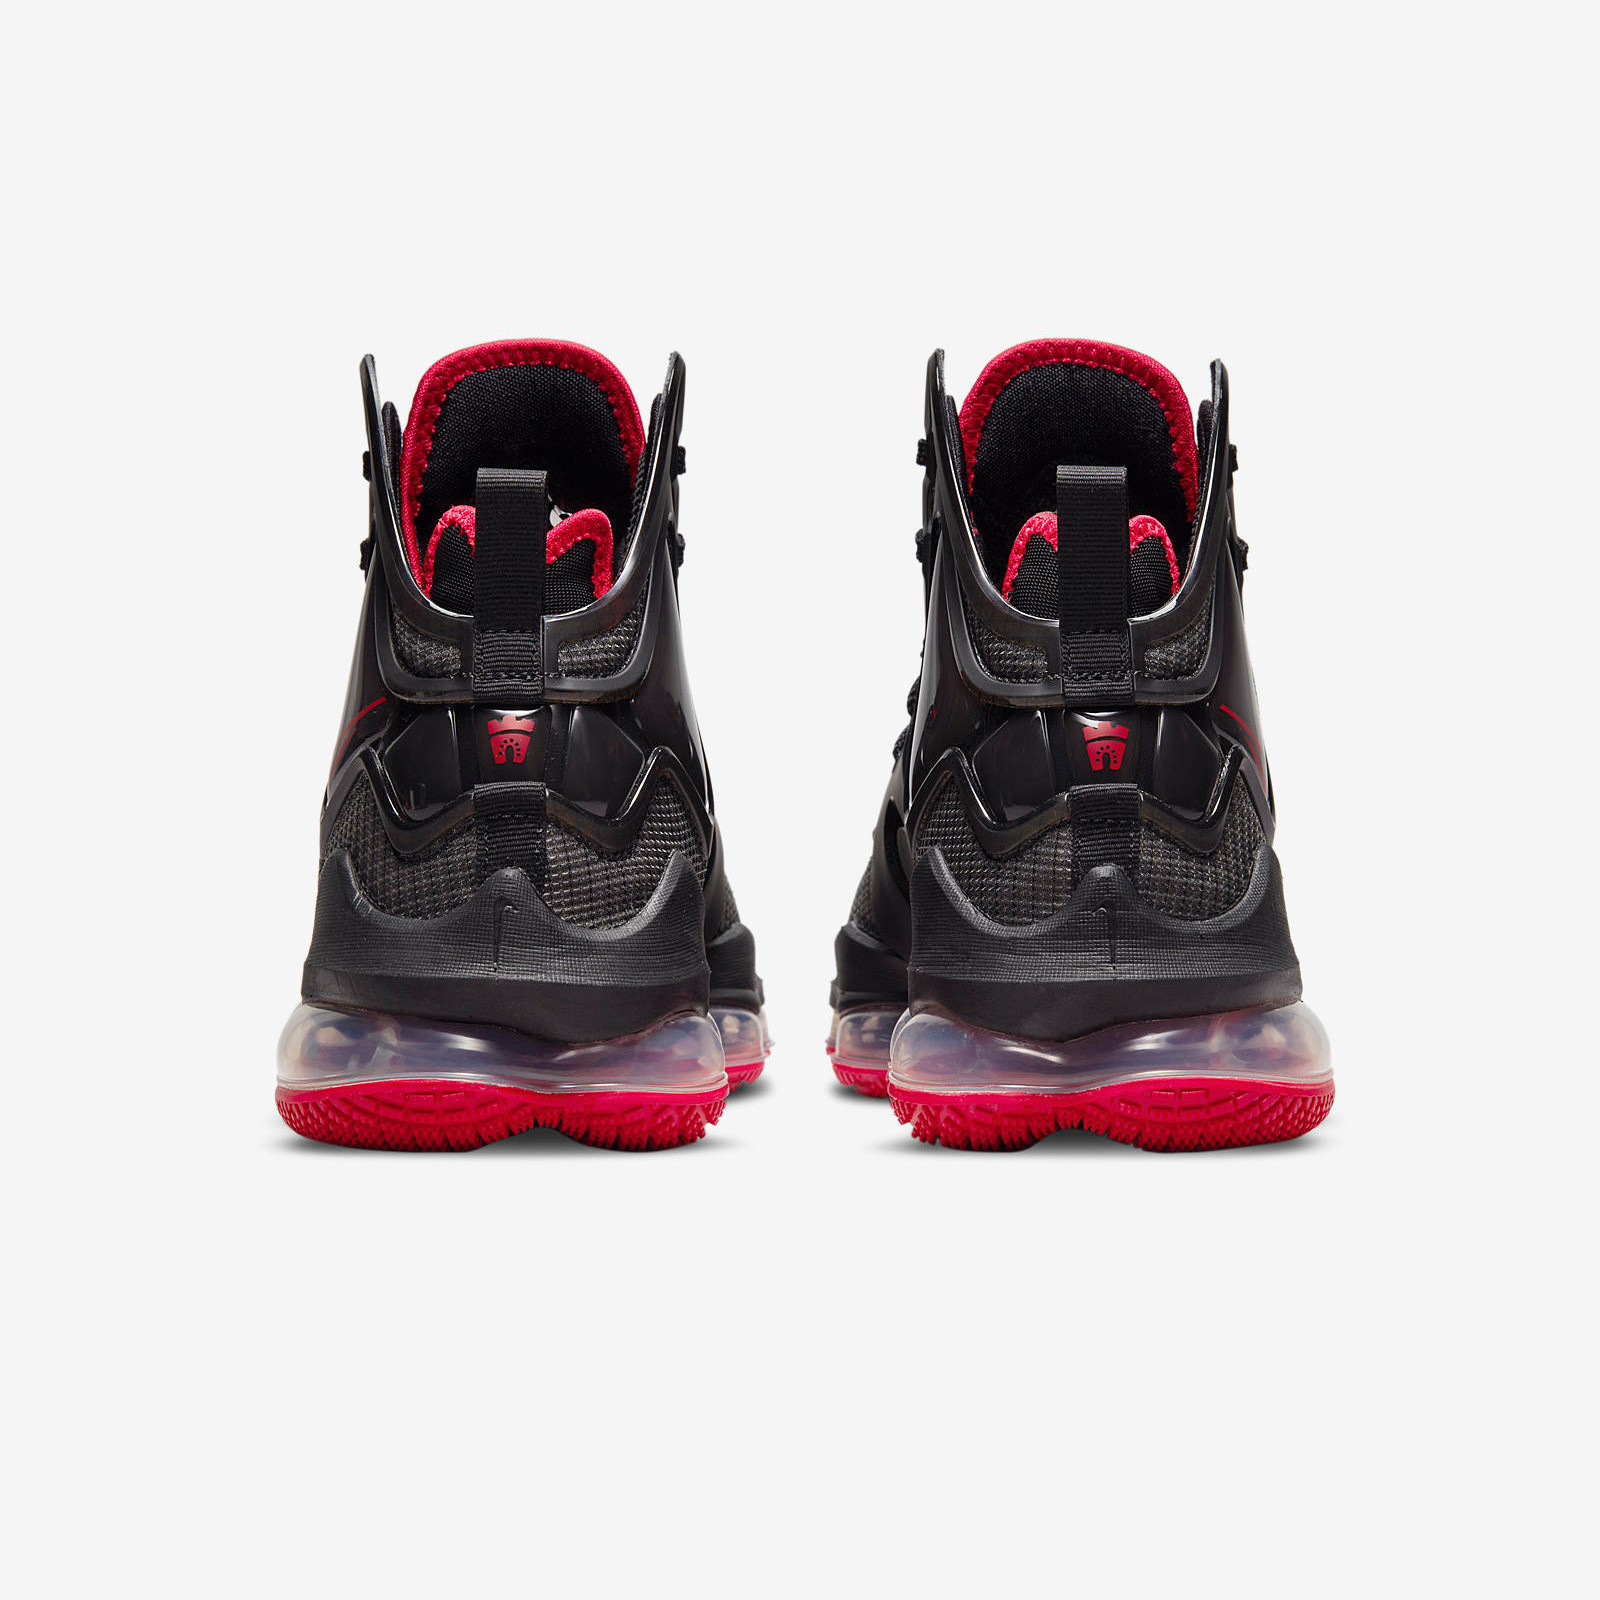 Nike LeBron 19
« Bred »